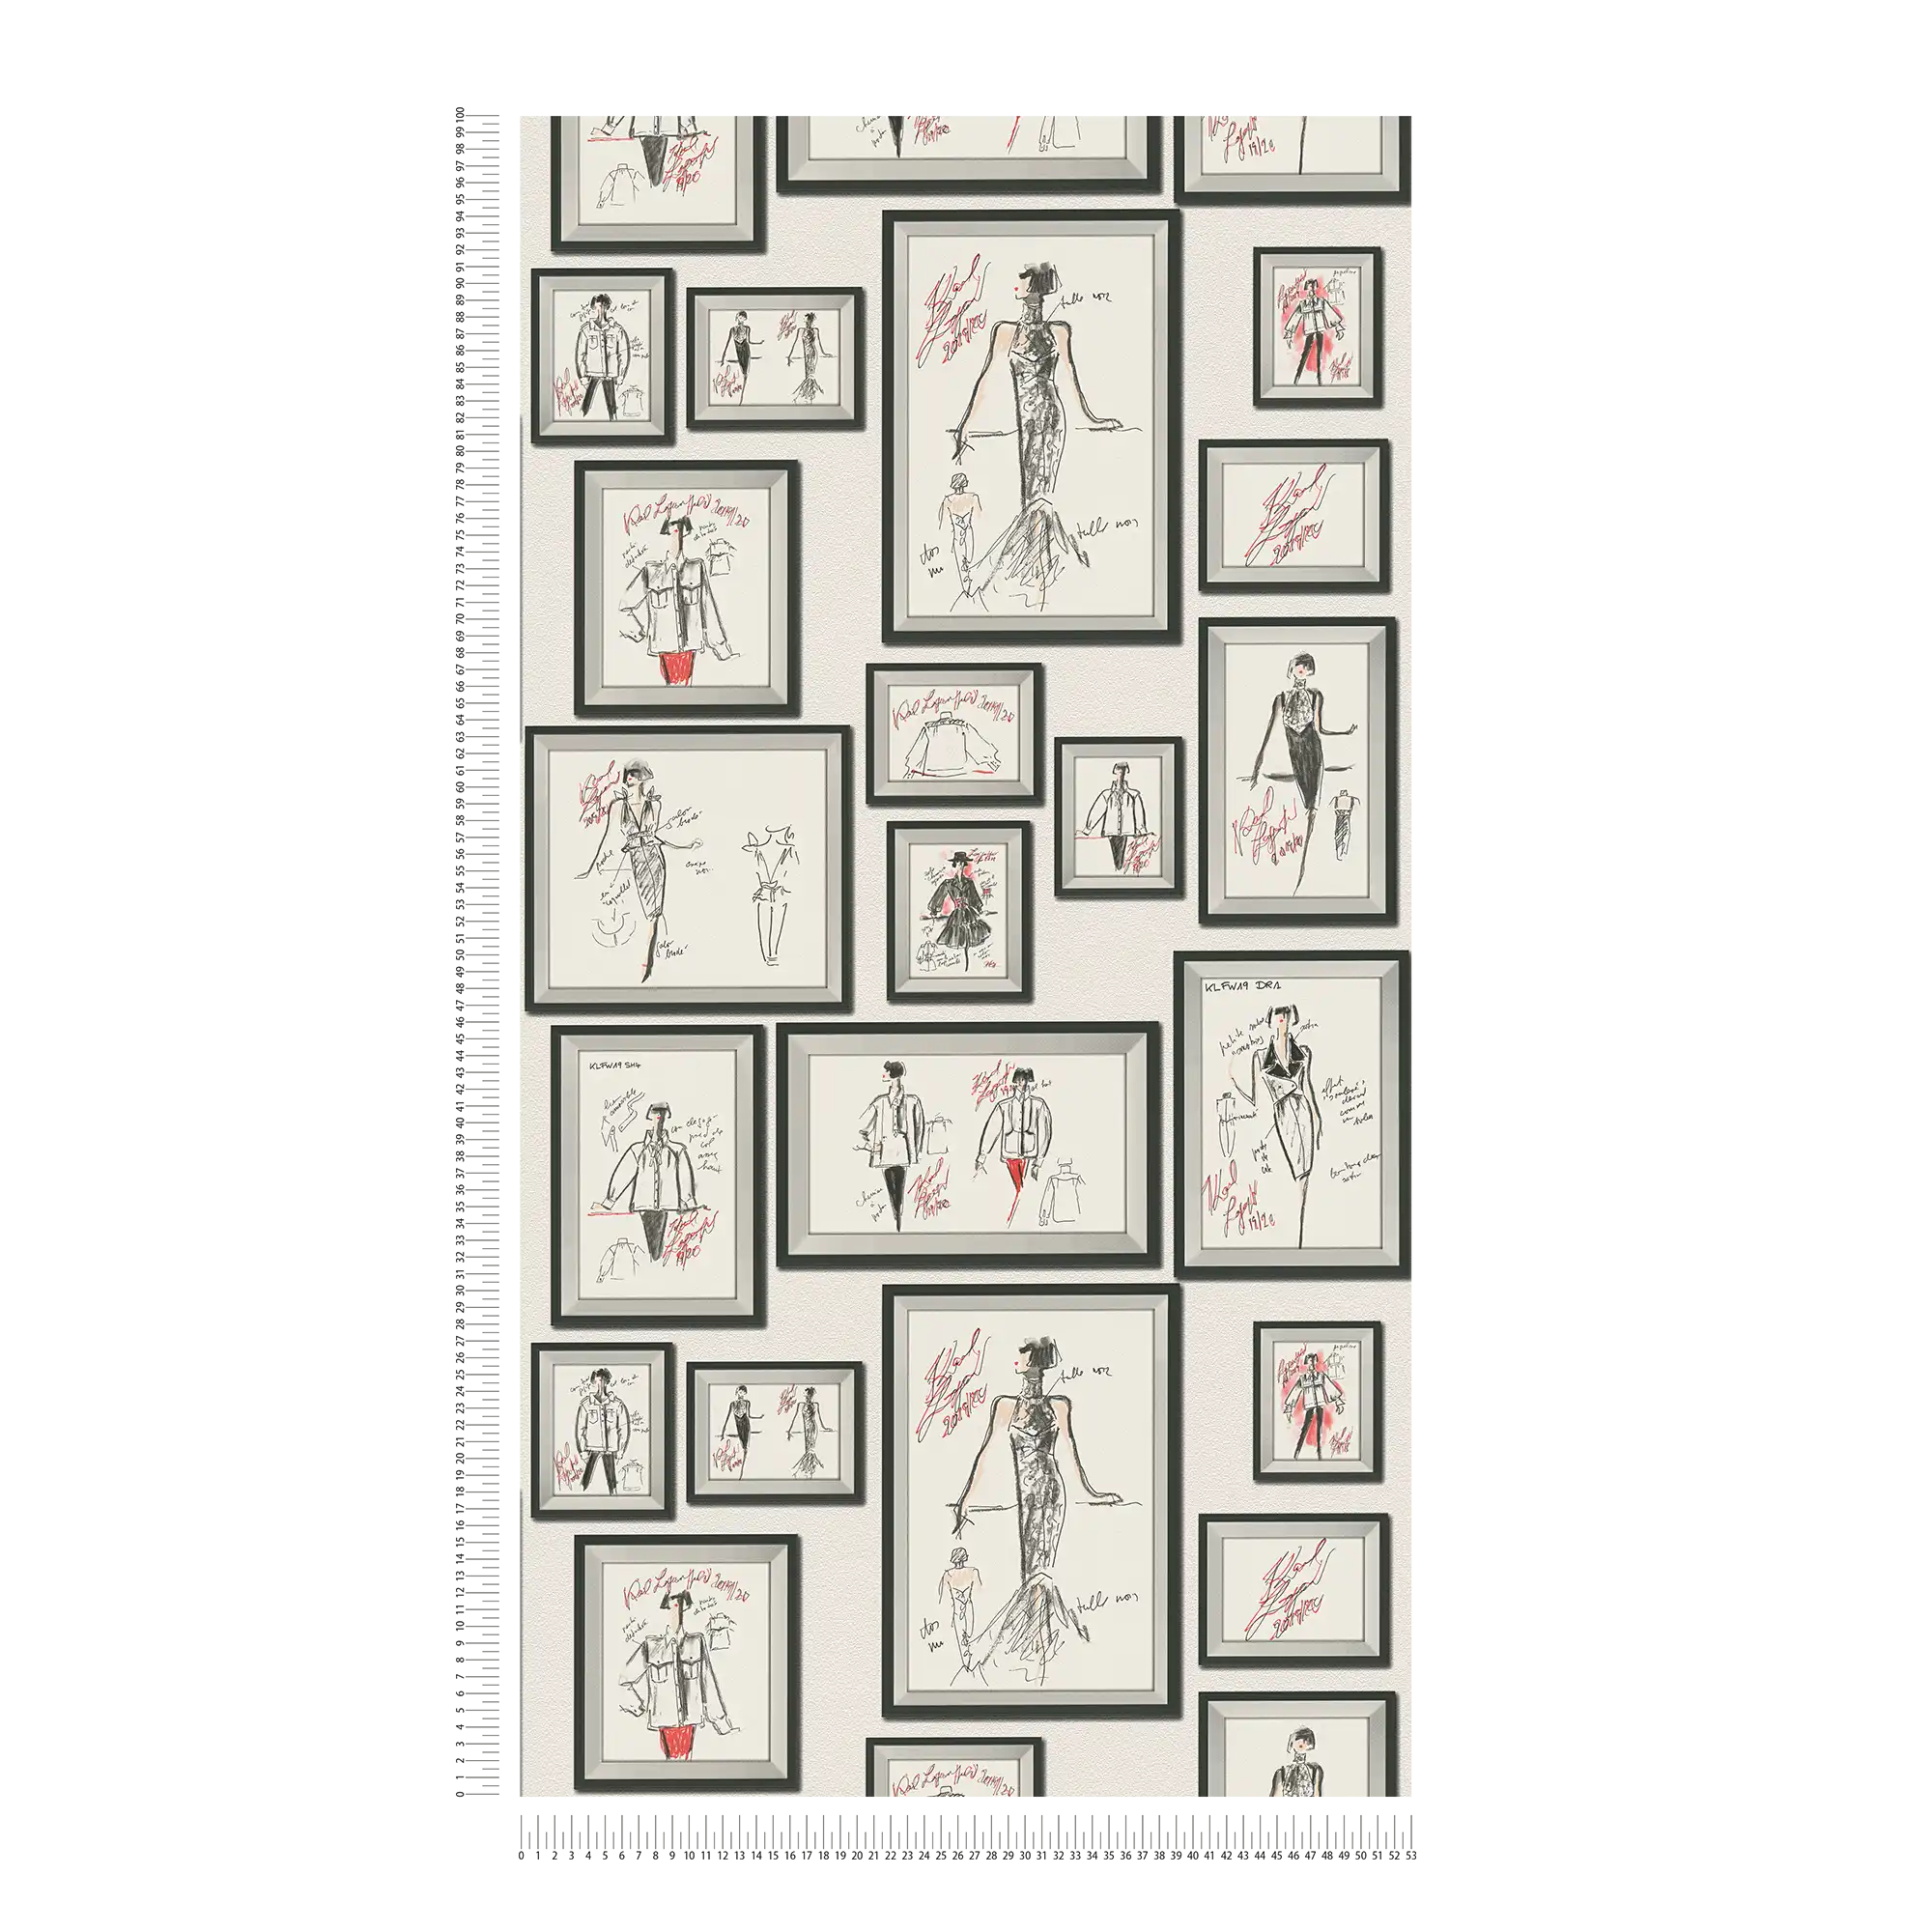             Non-woven wallpaper Karl LAGERFELD fashion designs - white, black
        